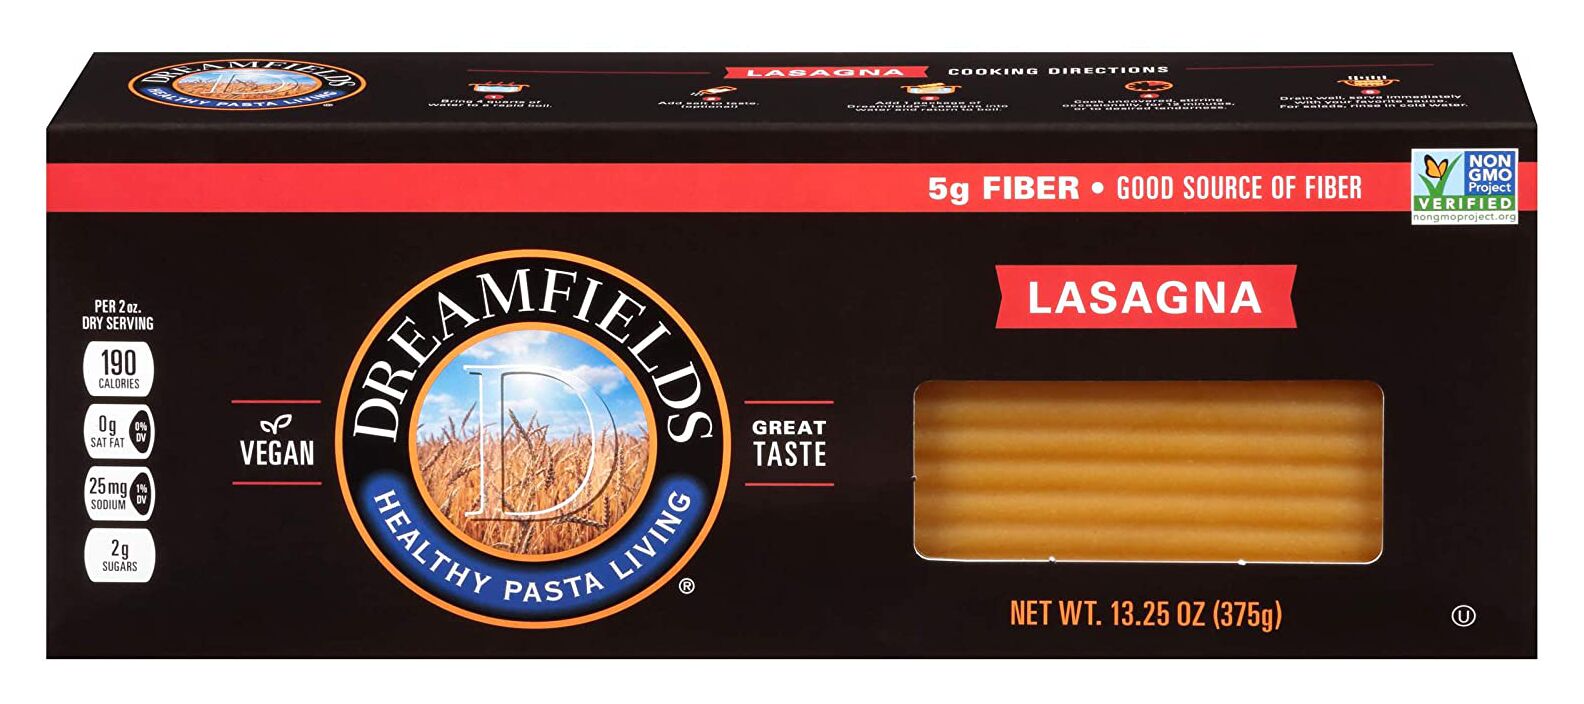 #Flavor_Lasagna #Size_12 Boxes